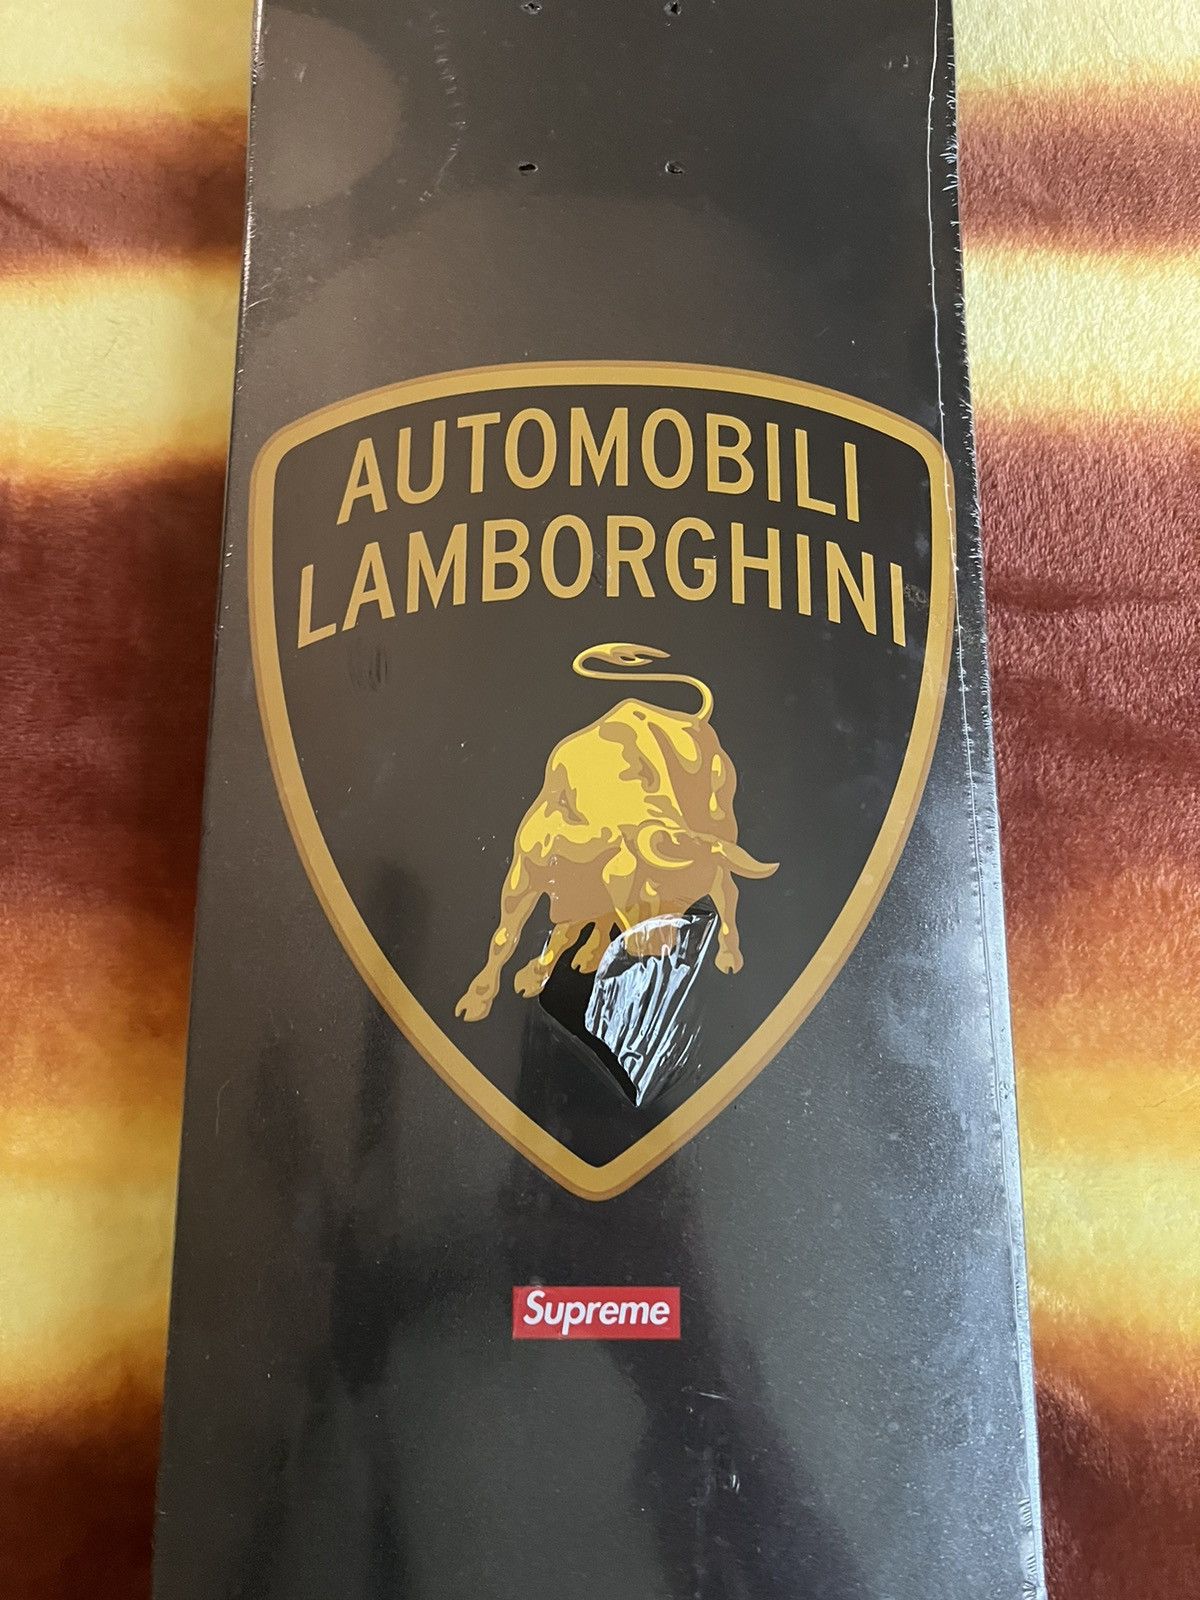 Supreme Supreme Automobili Lamborghini Skateboard Deck Black | Grailed